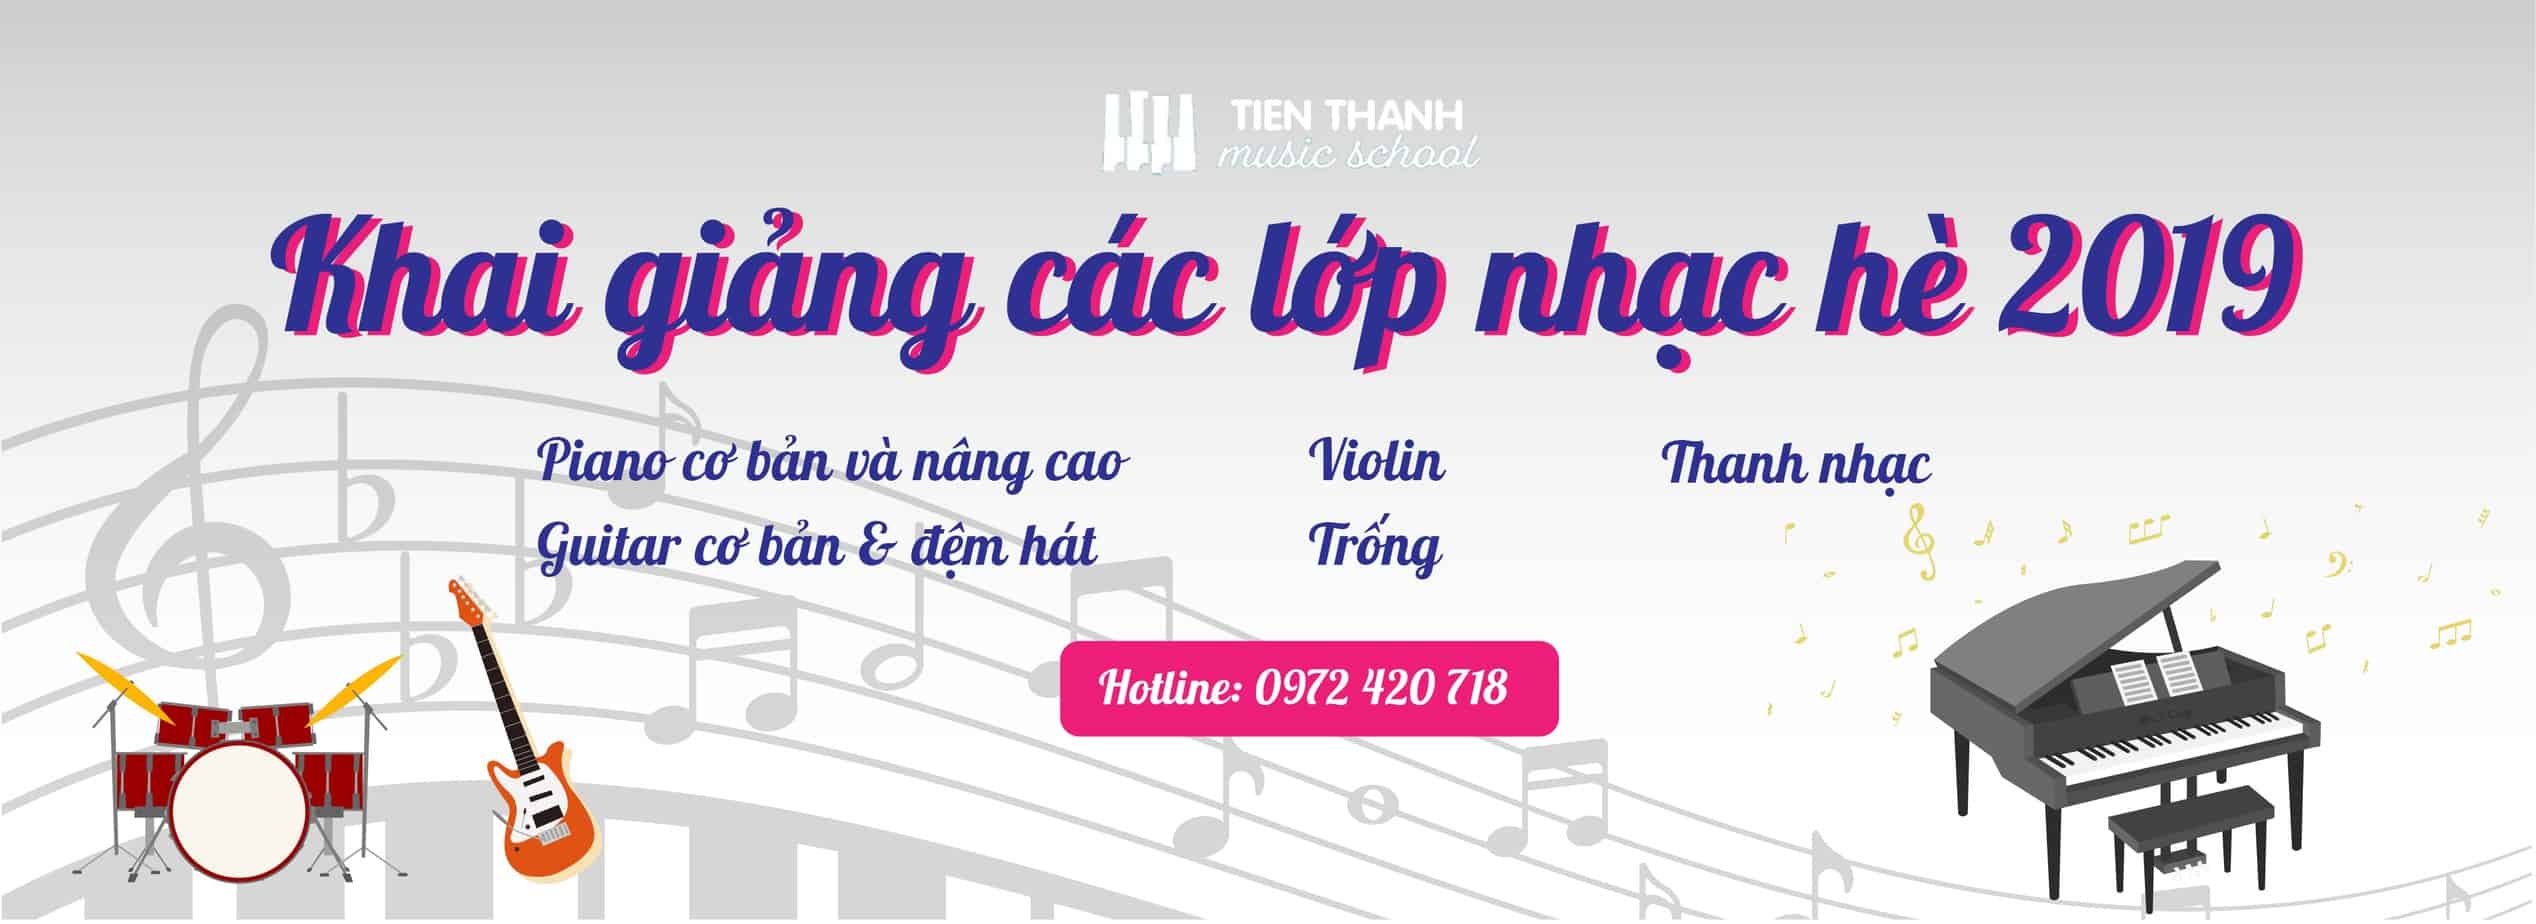 - Top 10 Trung Tâm Đào Tạo Guitar Chất Lượng, Uy Tín Tại Hà Nội